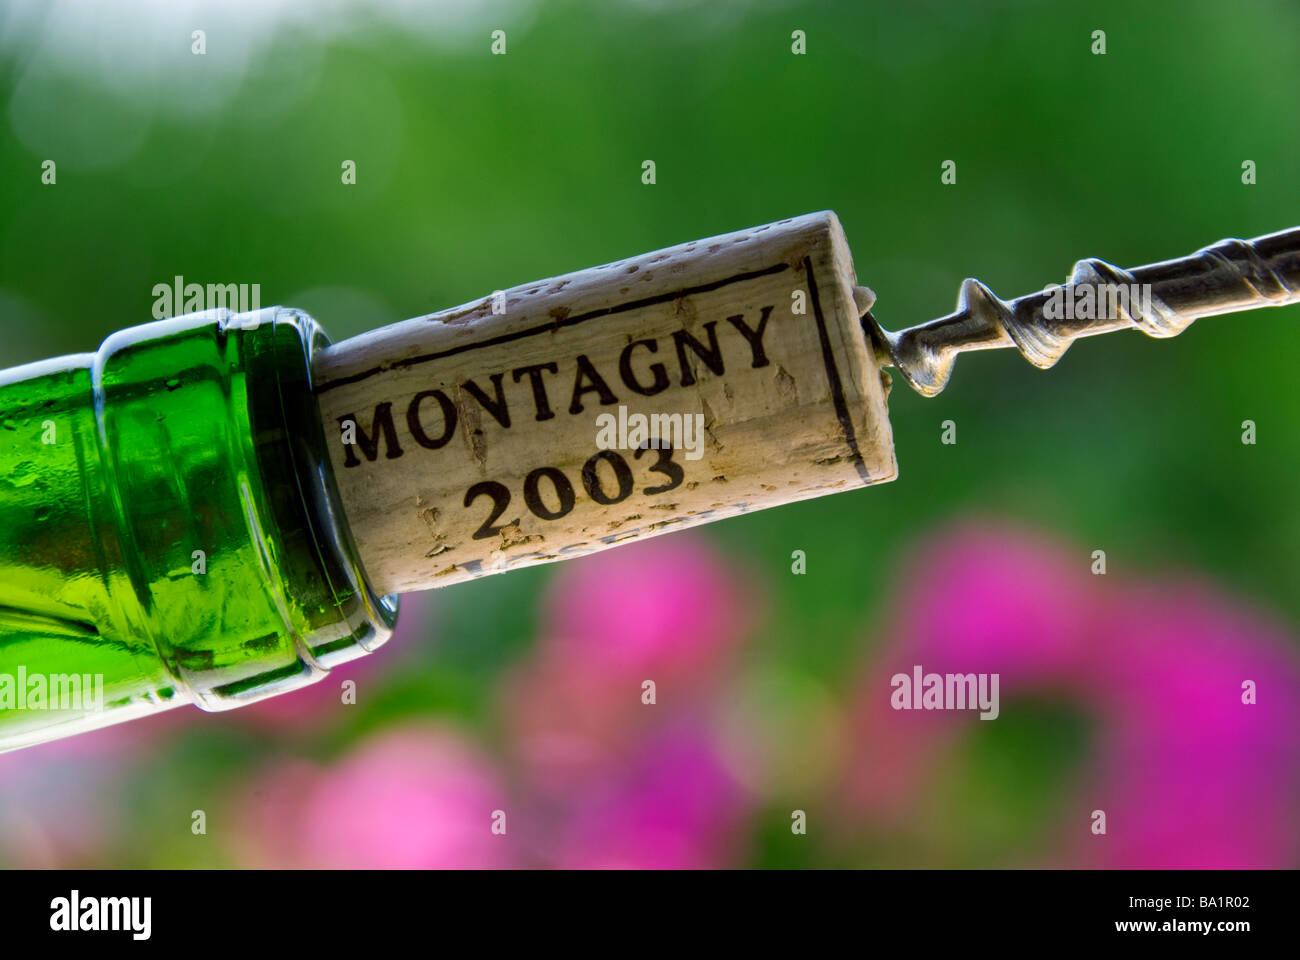 MONTAGNY BORGOGNA Vino Cavatappi tirando un tappo da una bottiglia di Montagny bianco vino di Borgogna 2003 Côte Chalonnaise Francia Foto Stock